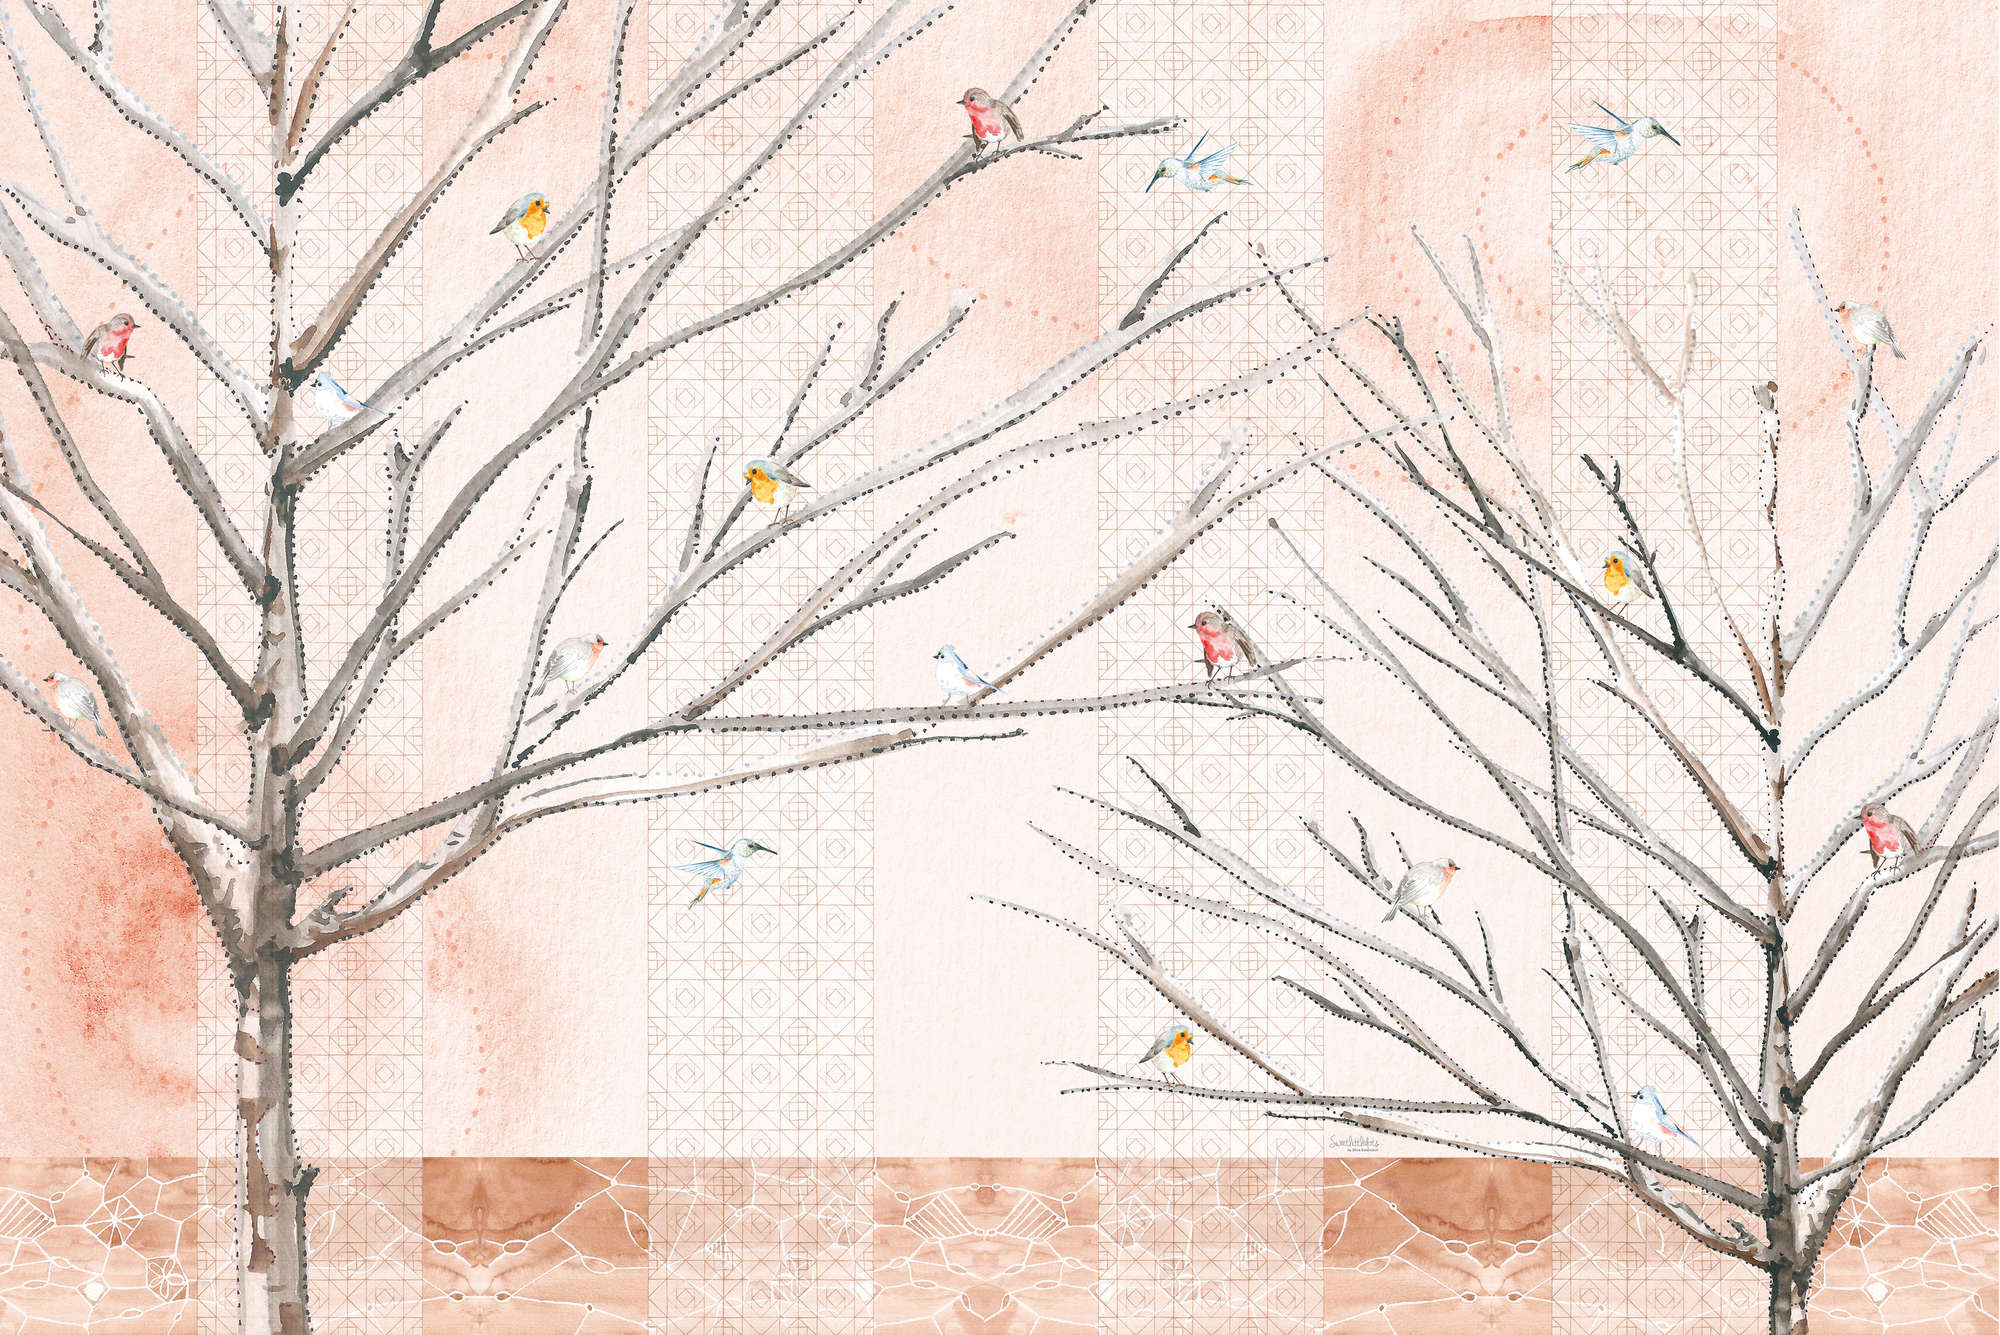             Papier peint artistique Arbres avec oiseaux en beige et marron sur intissé lisse mat
        